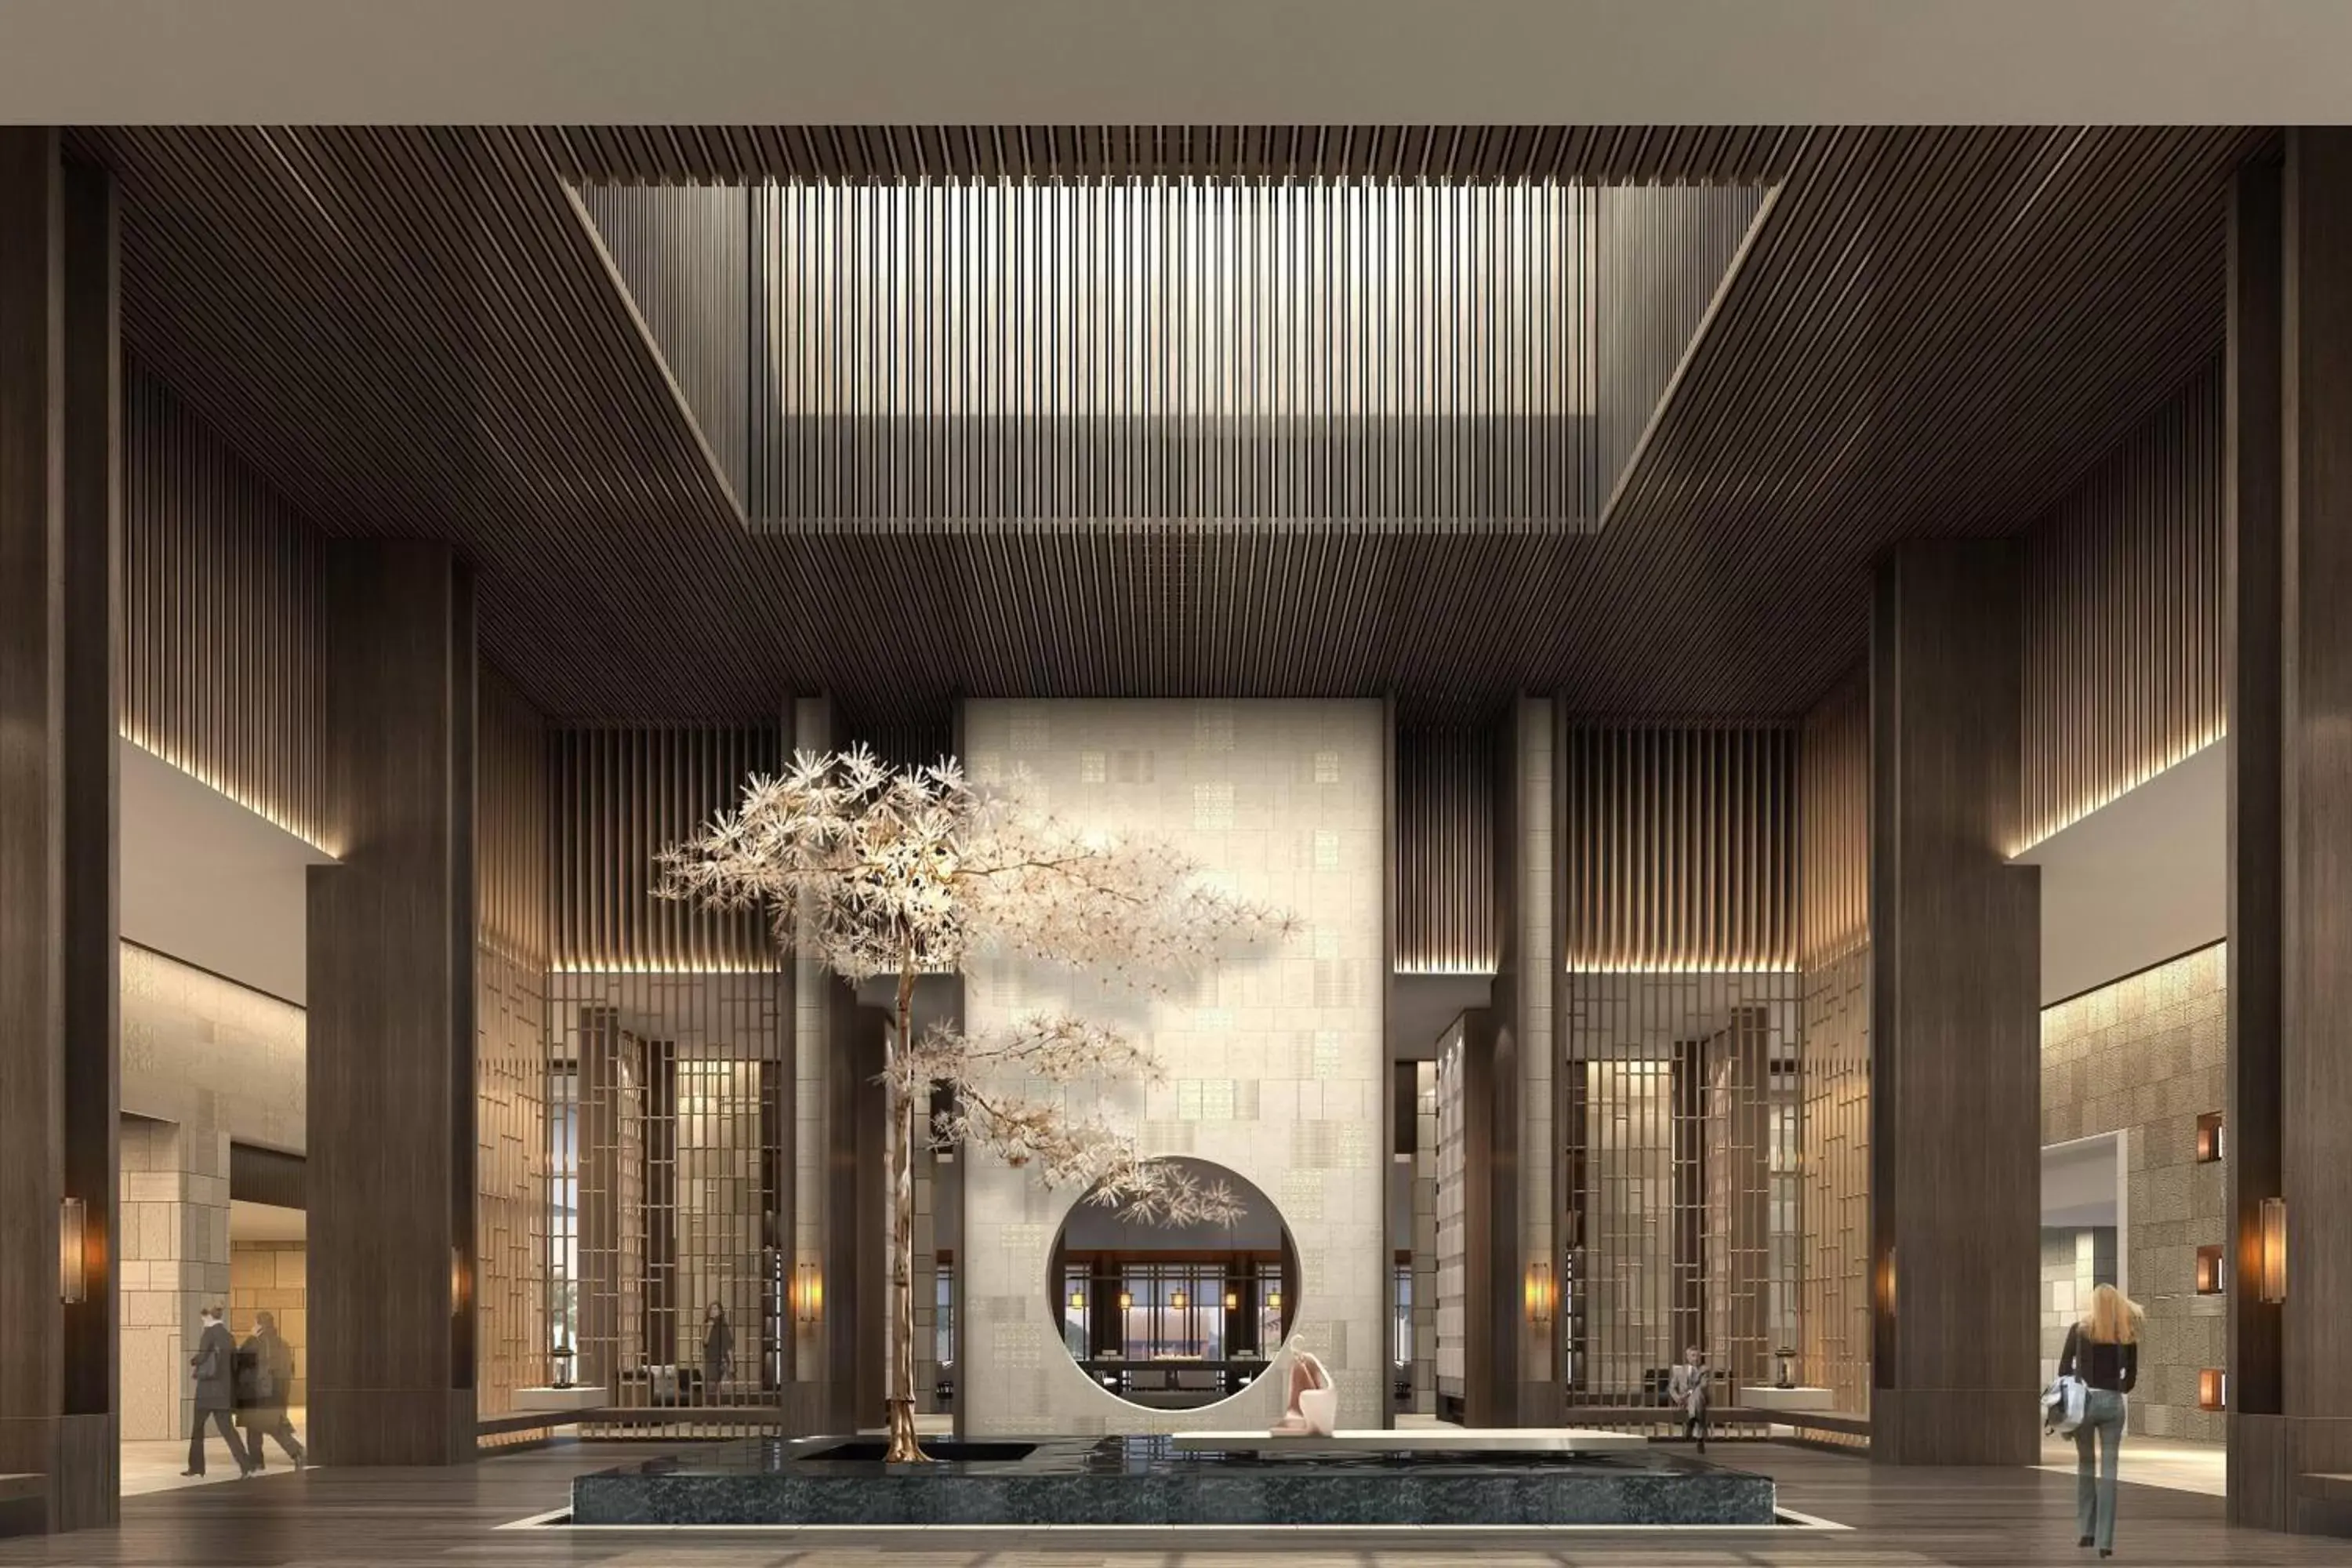 Lobby or reception in JW Marriott Hotel Qufu